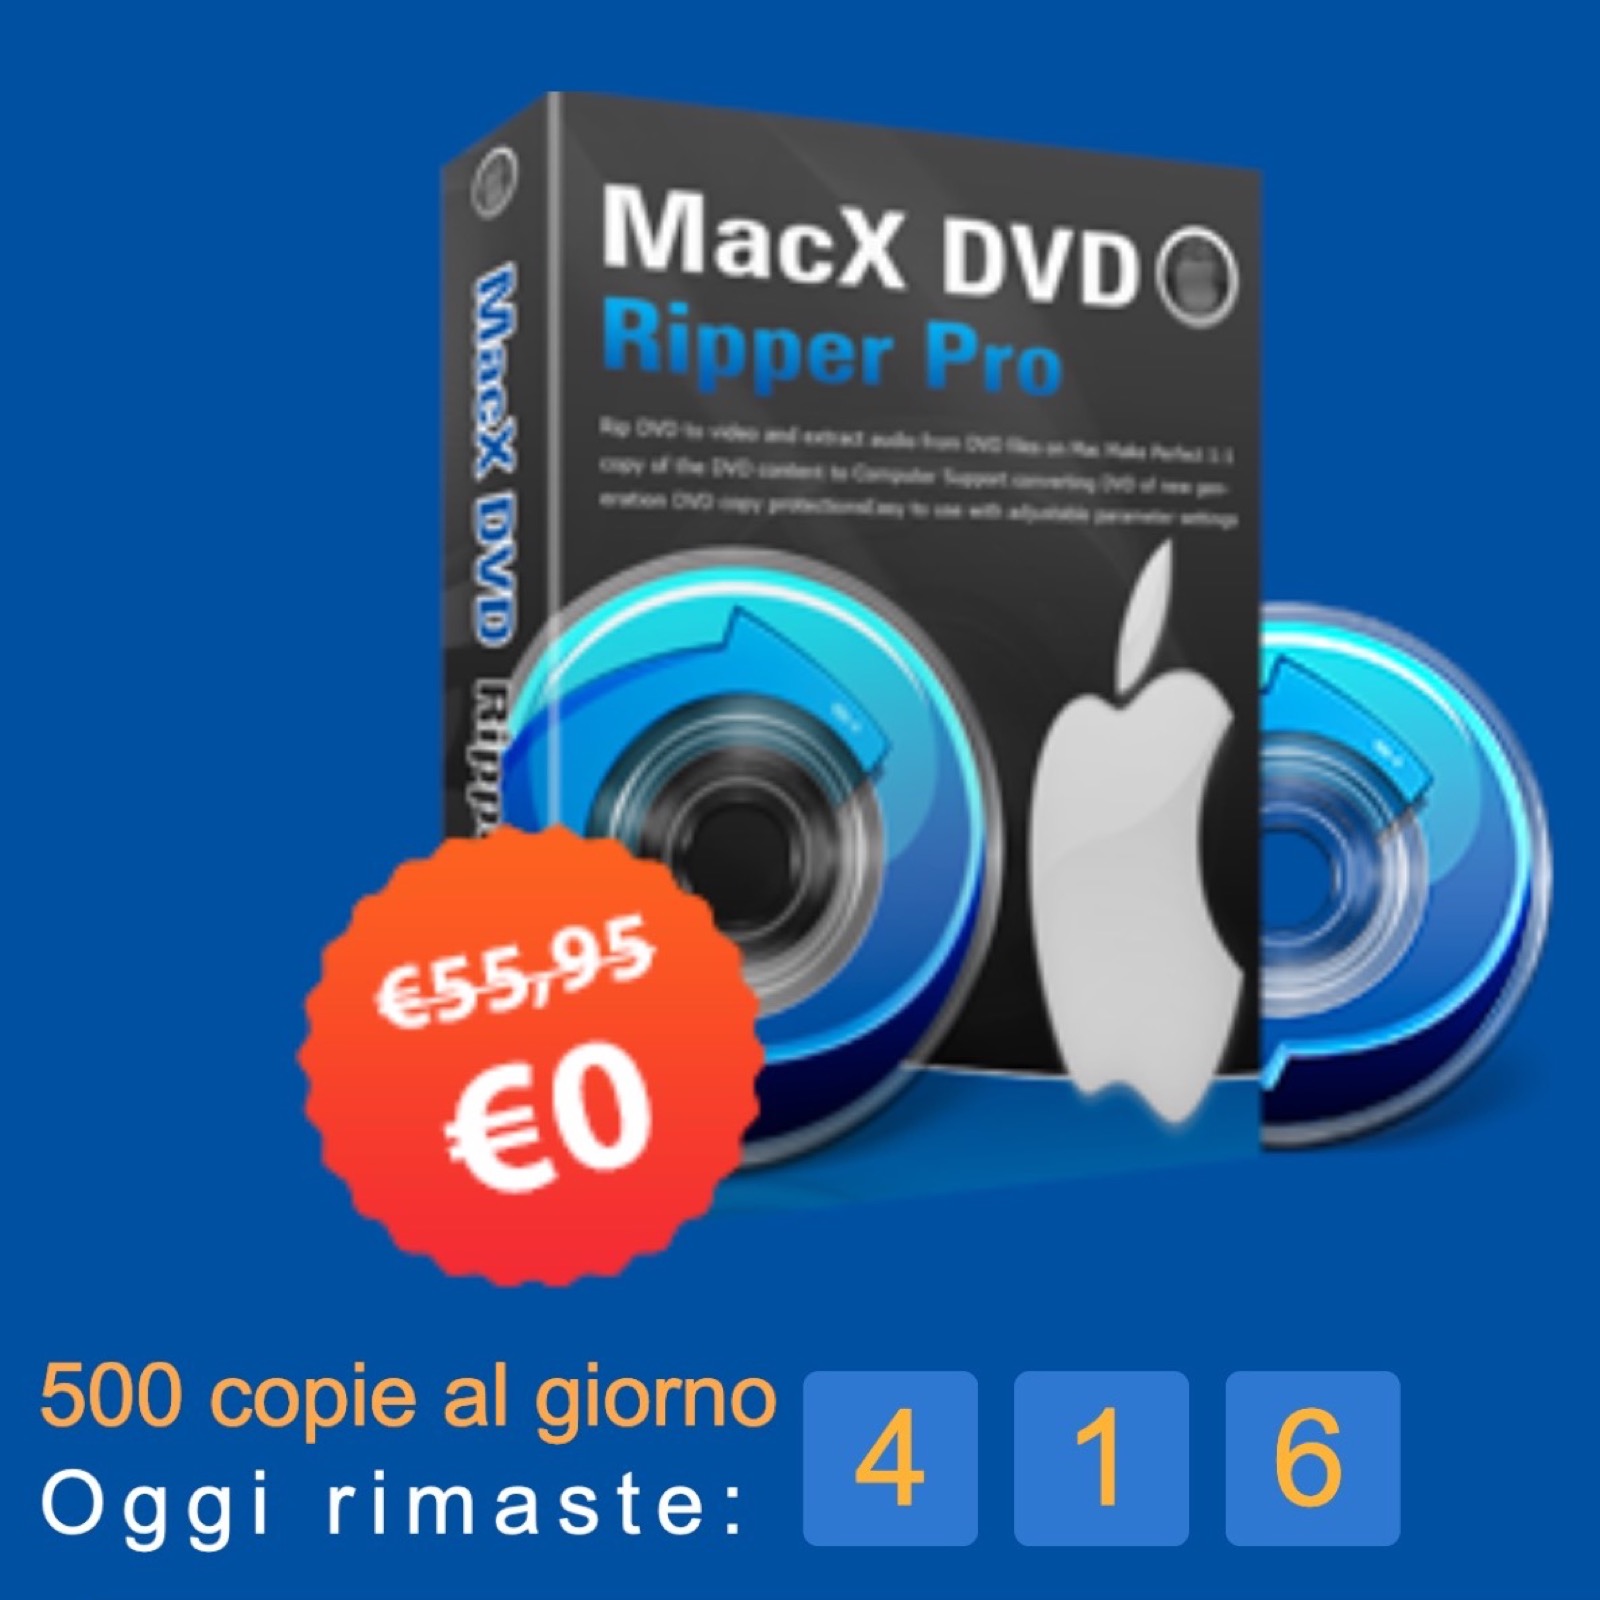 MacX DVD Ripper Pro compie 13 anni: come scaricarlo gratis